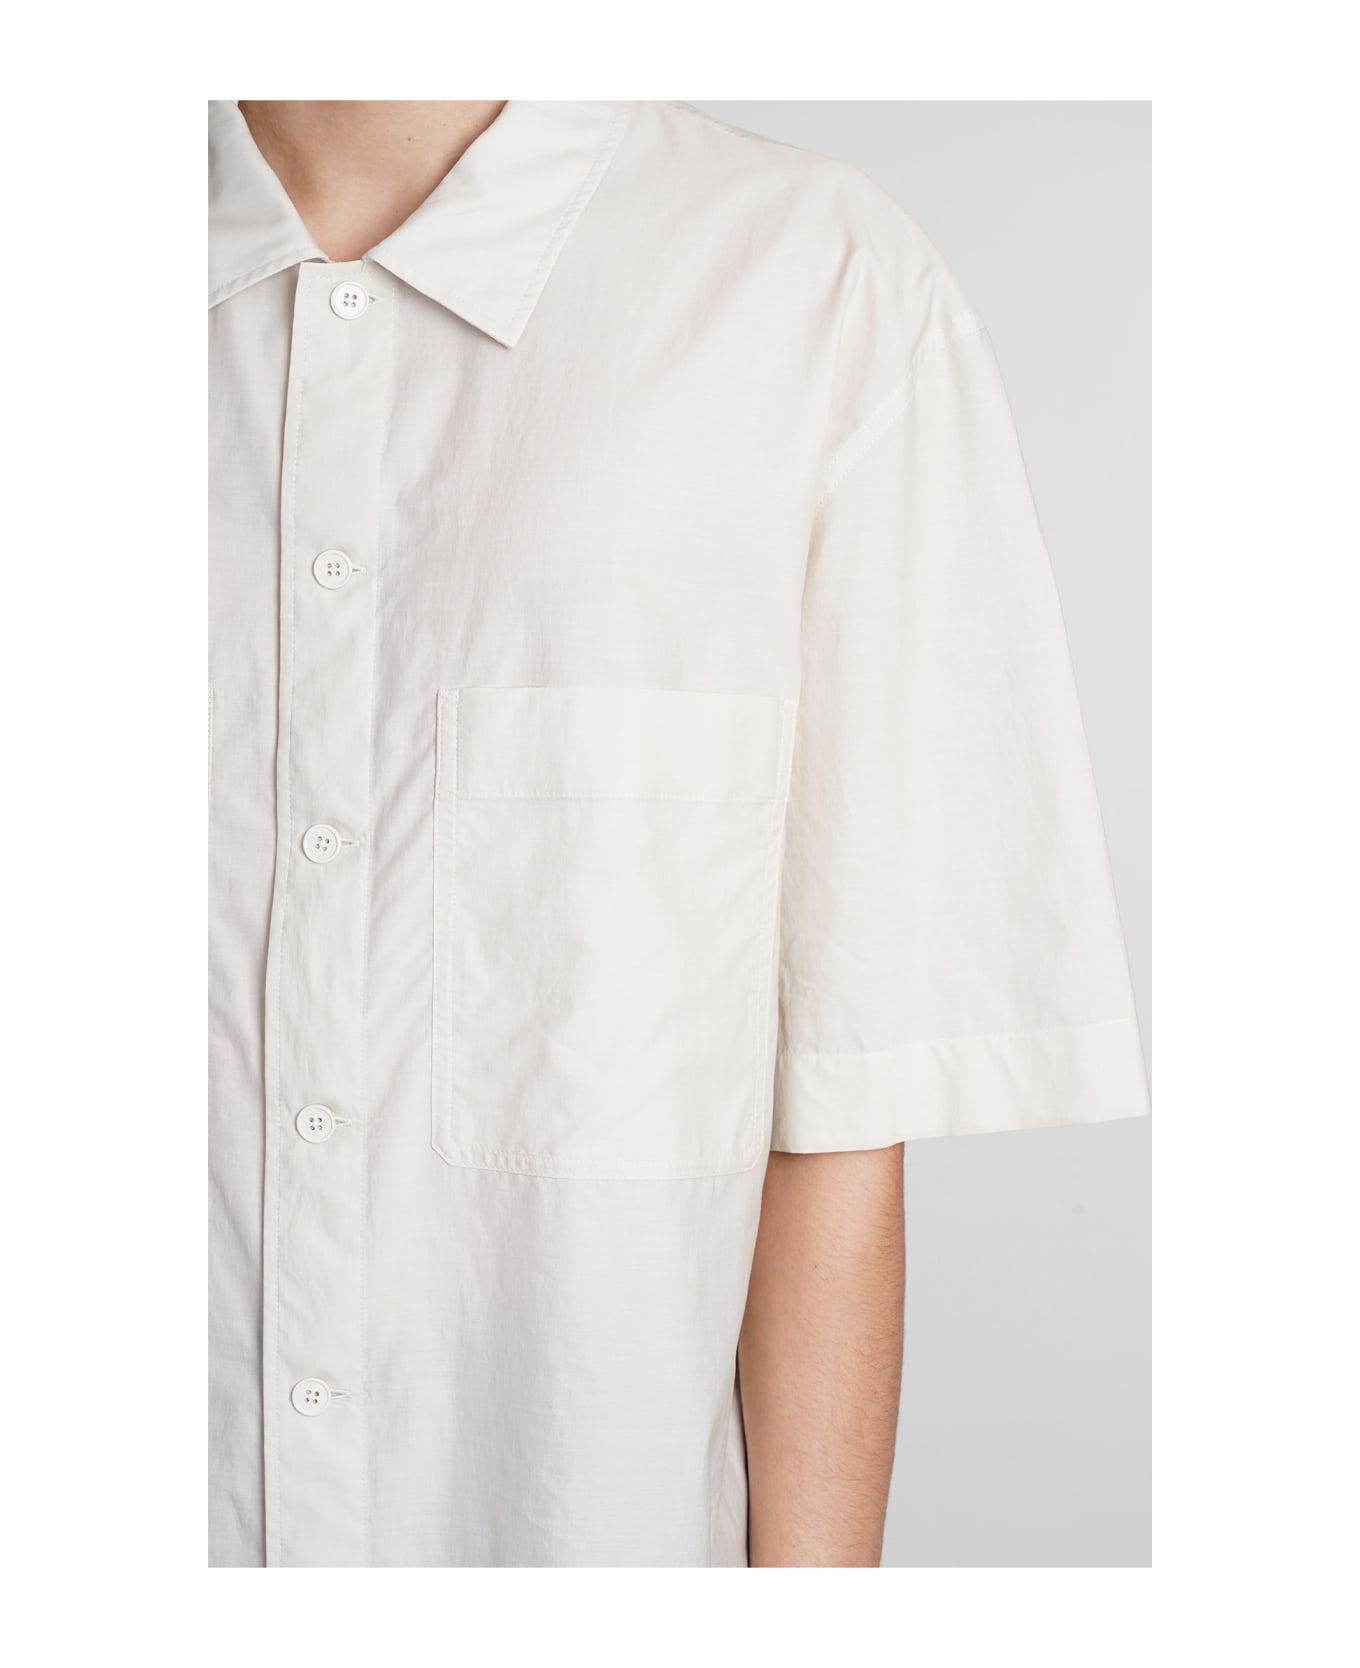 Lemaire Shirt In Beige Cotton - NEUTRALS シャツ